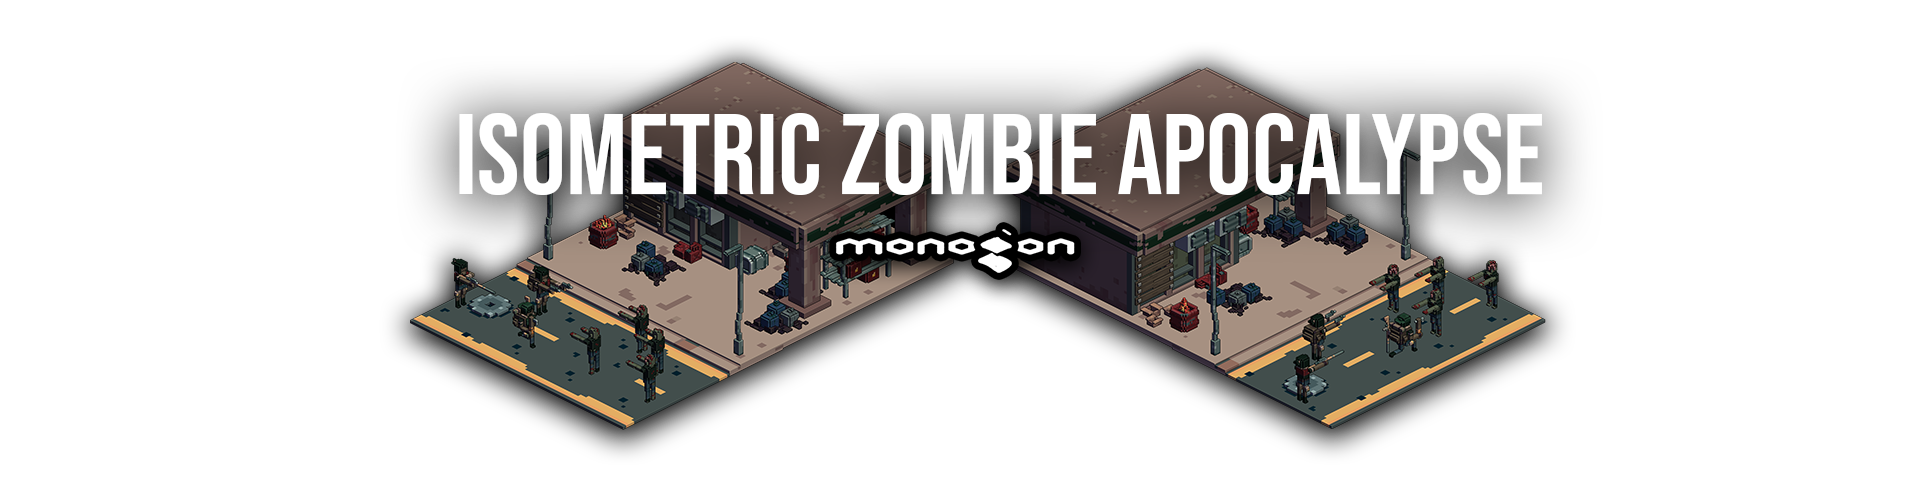 Isometric Zombie Apocalypse - monogon